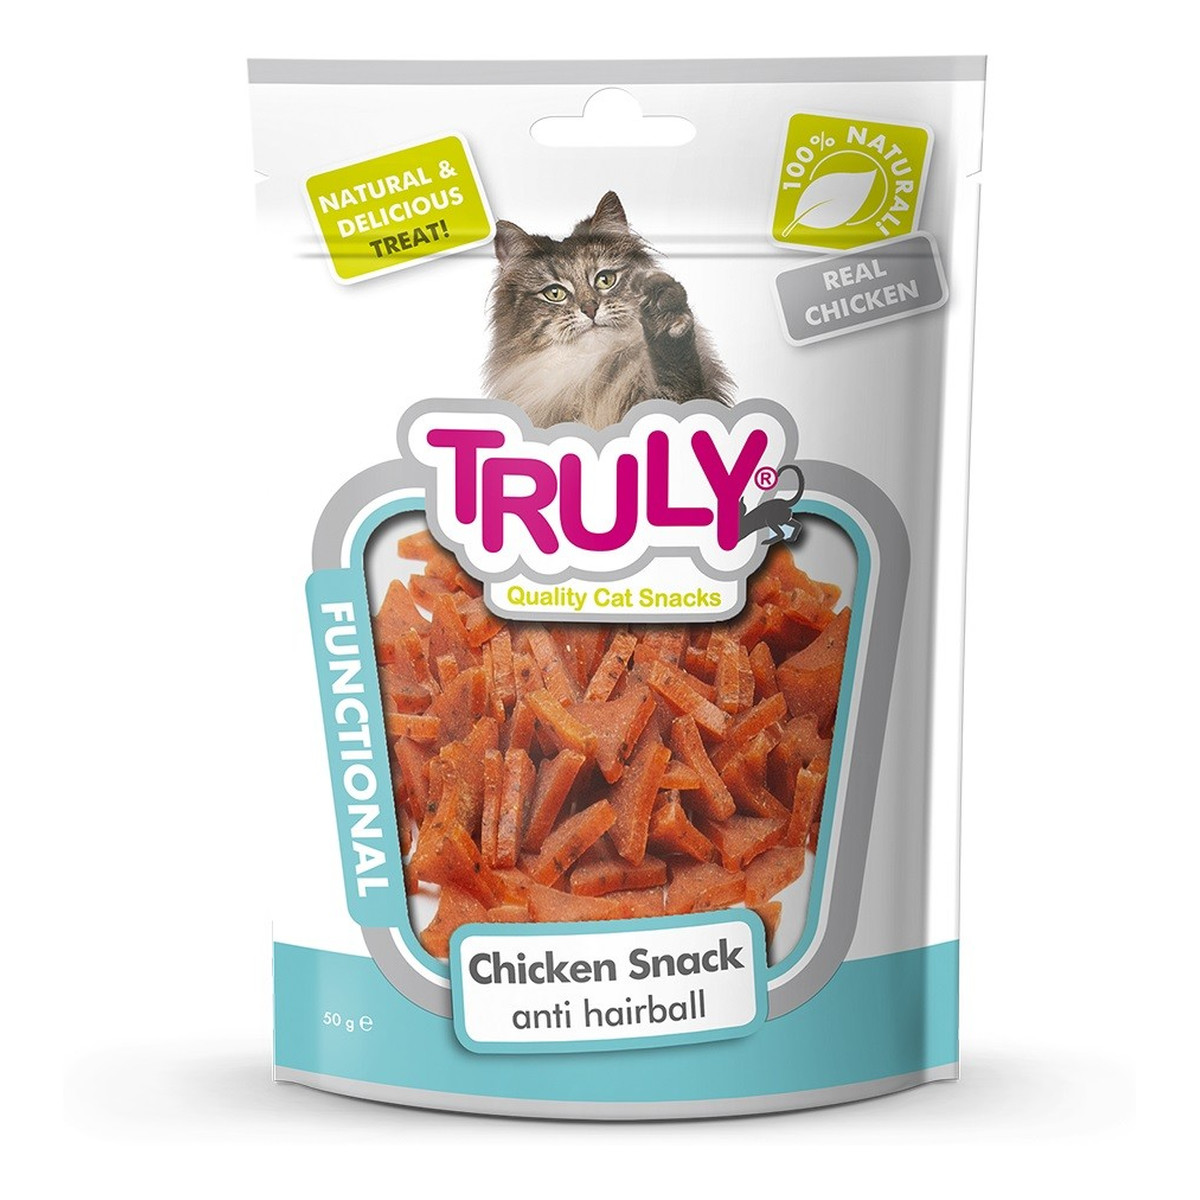 Truly Cat snacks przekąski dla kota functional-kawałki kurczaka i tauryna (antykłaczkowa) 50g